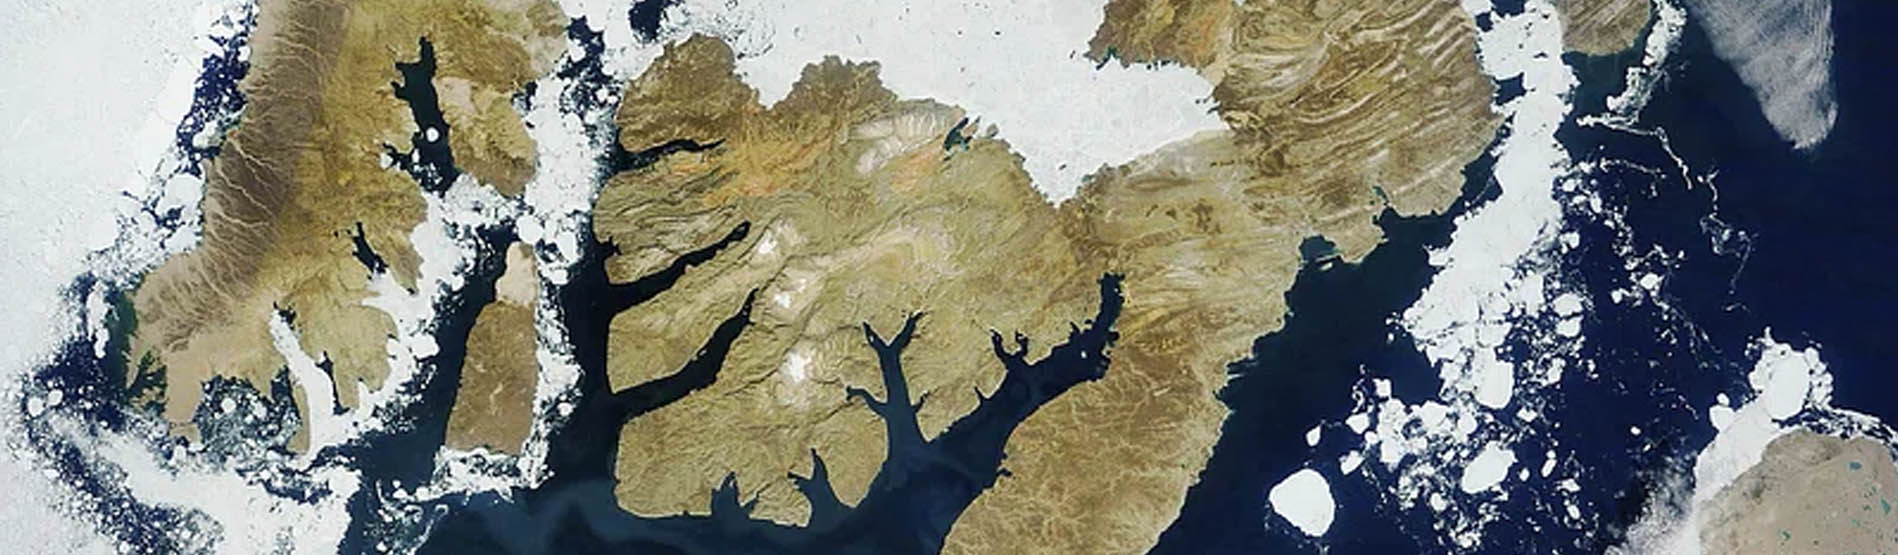 A satellite image of Antarctica